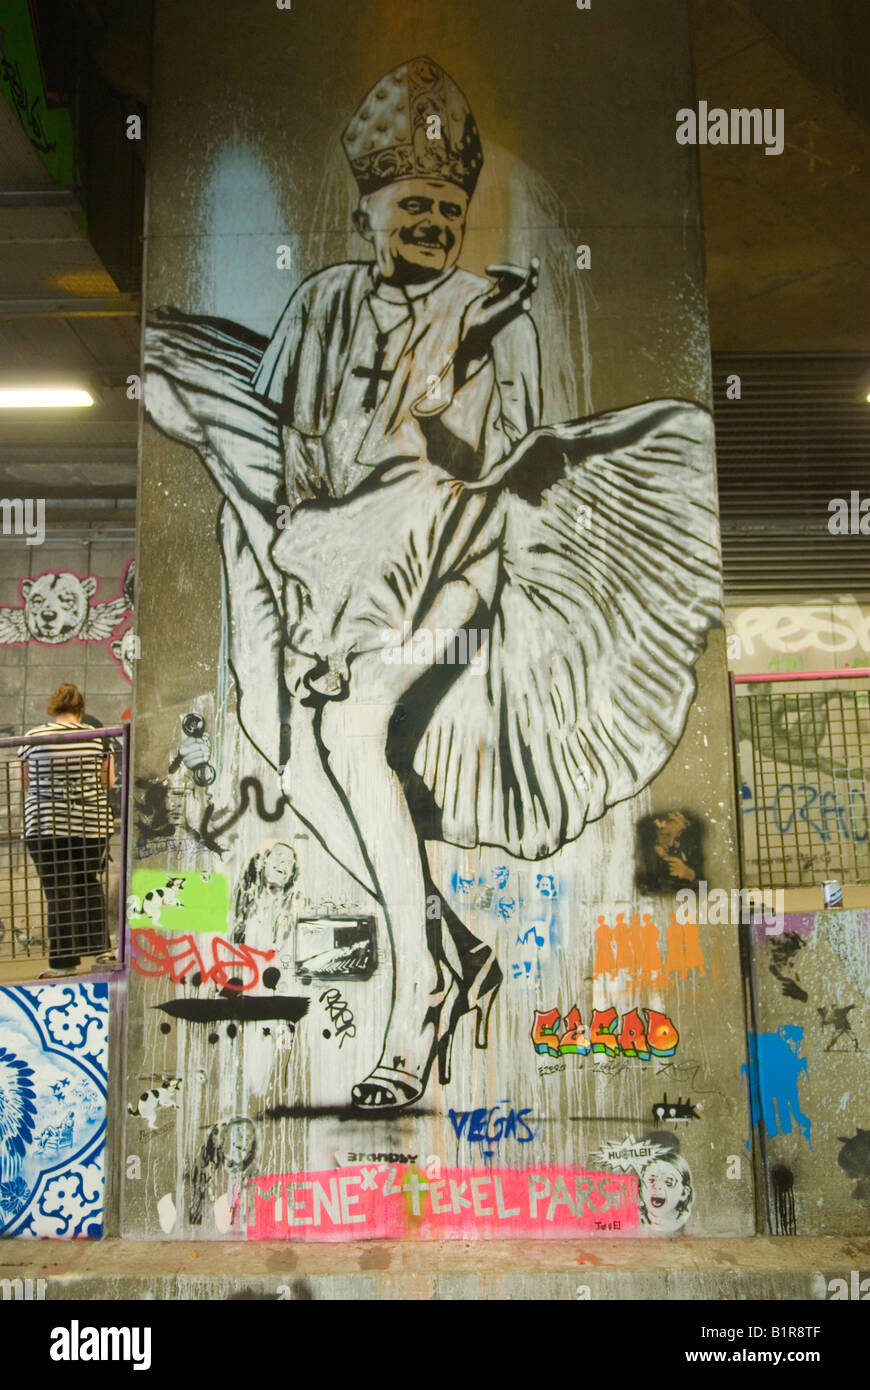 Mostra di Street art con graffiti, immagine del Papa che indossa un abito e scarpe alte curative. Londra Regno Unito 2008 2000s HOMER SYKES Foto Stock